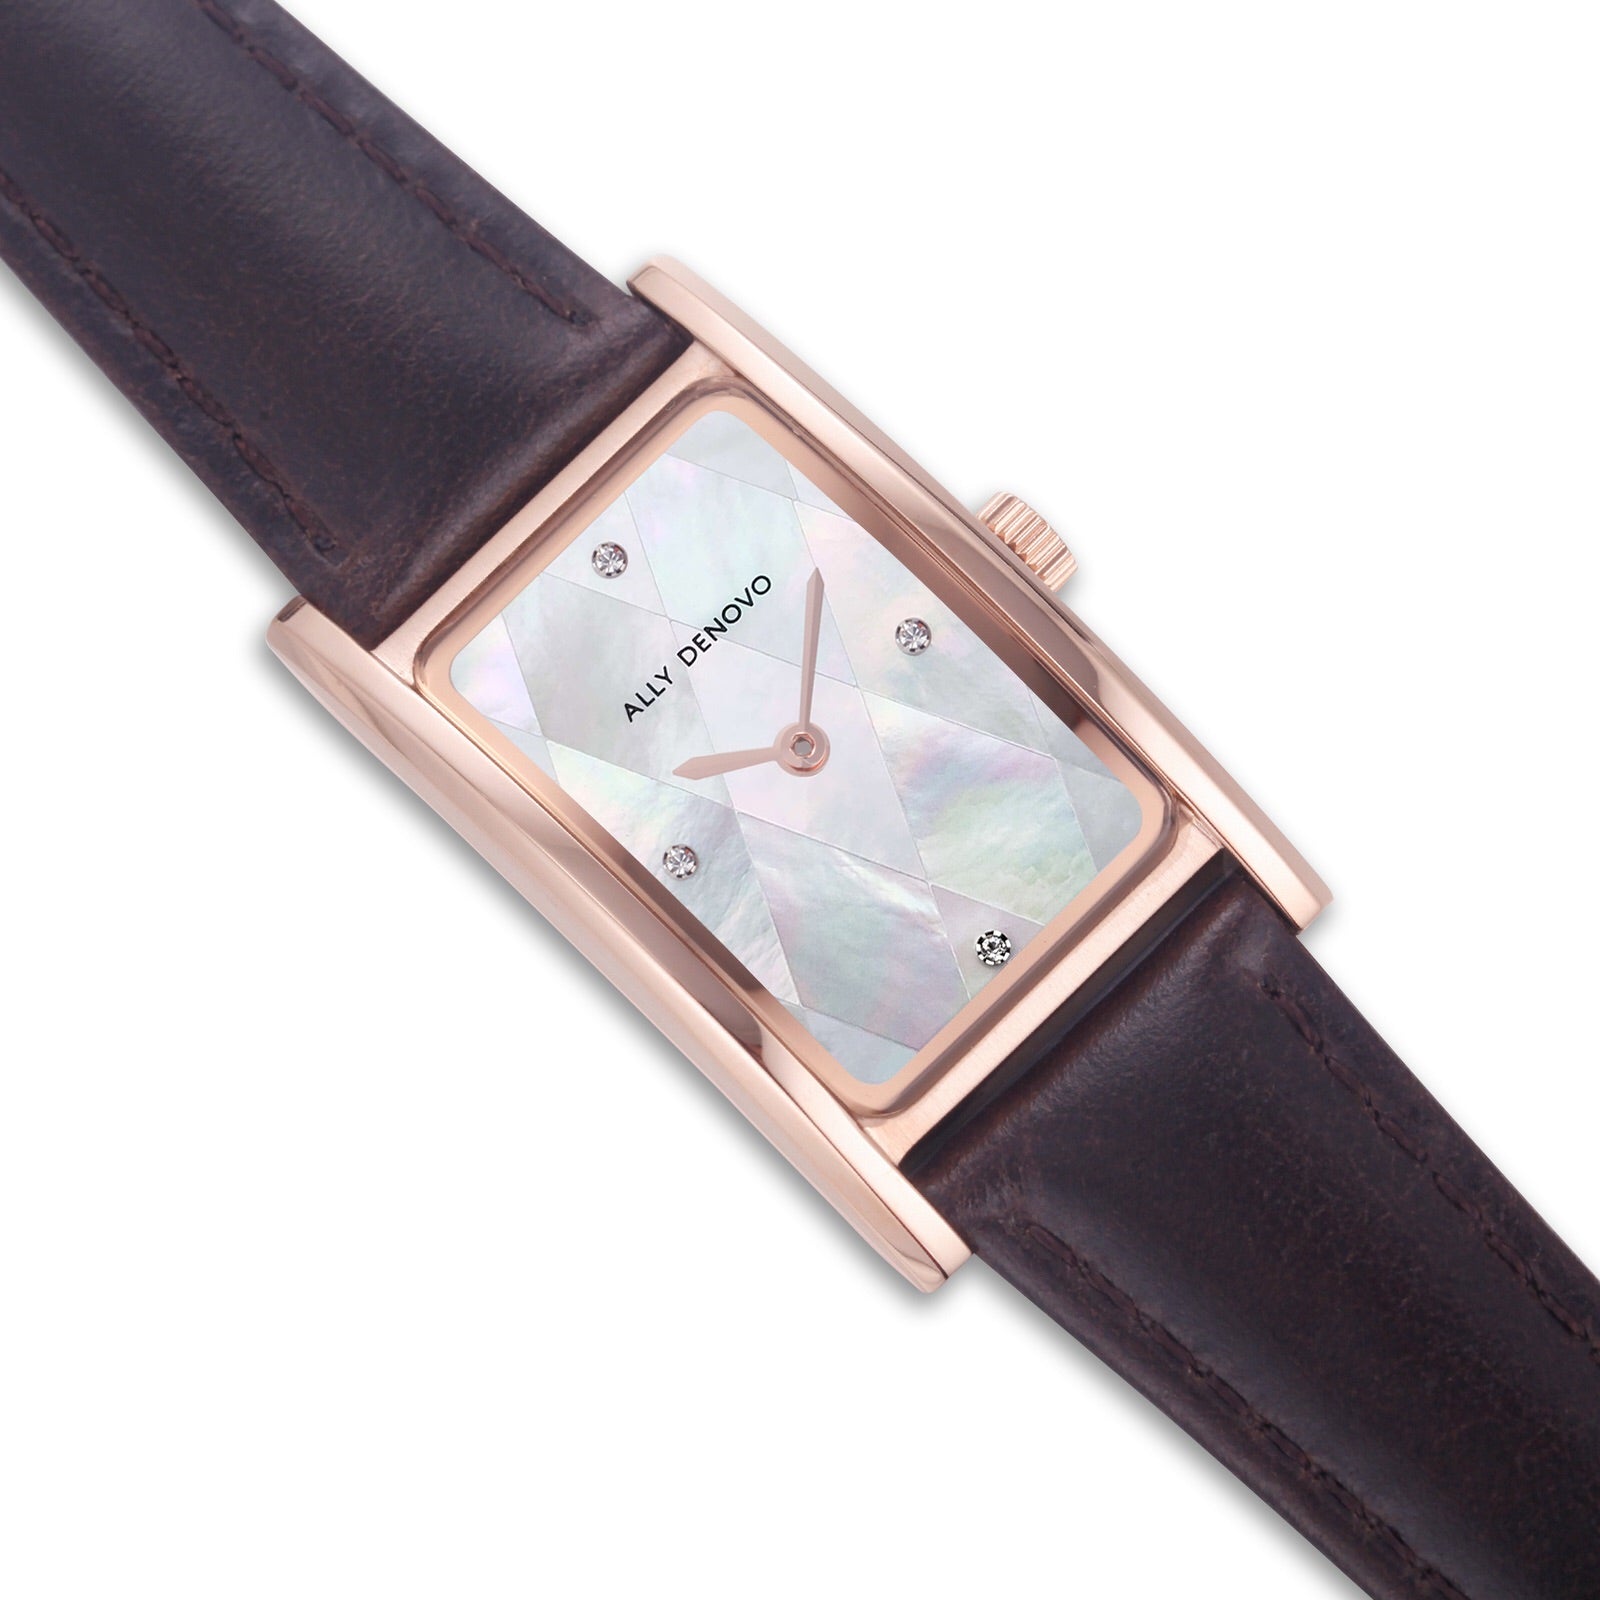 【限量頂級方形琉璃錶鍊禮盒】珍珠白菱玫瑰金框咖啡手錶 限時贈送 銀製手鍊